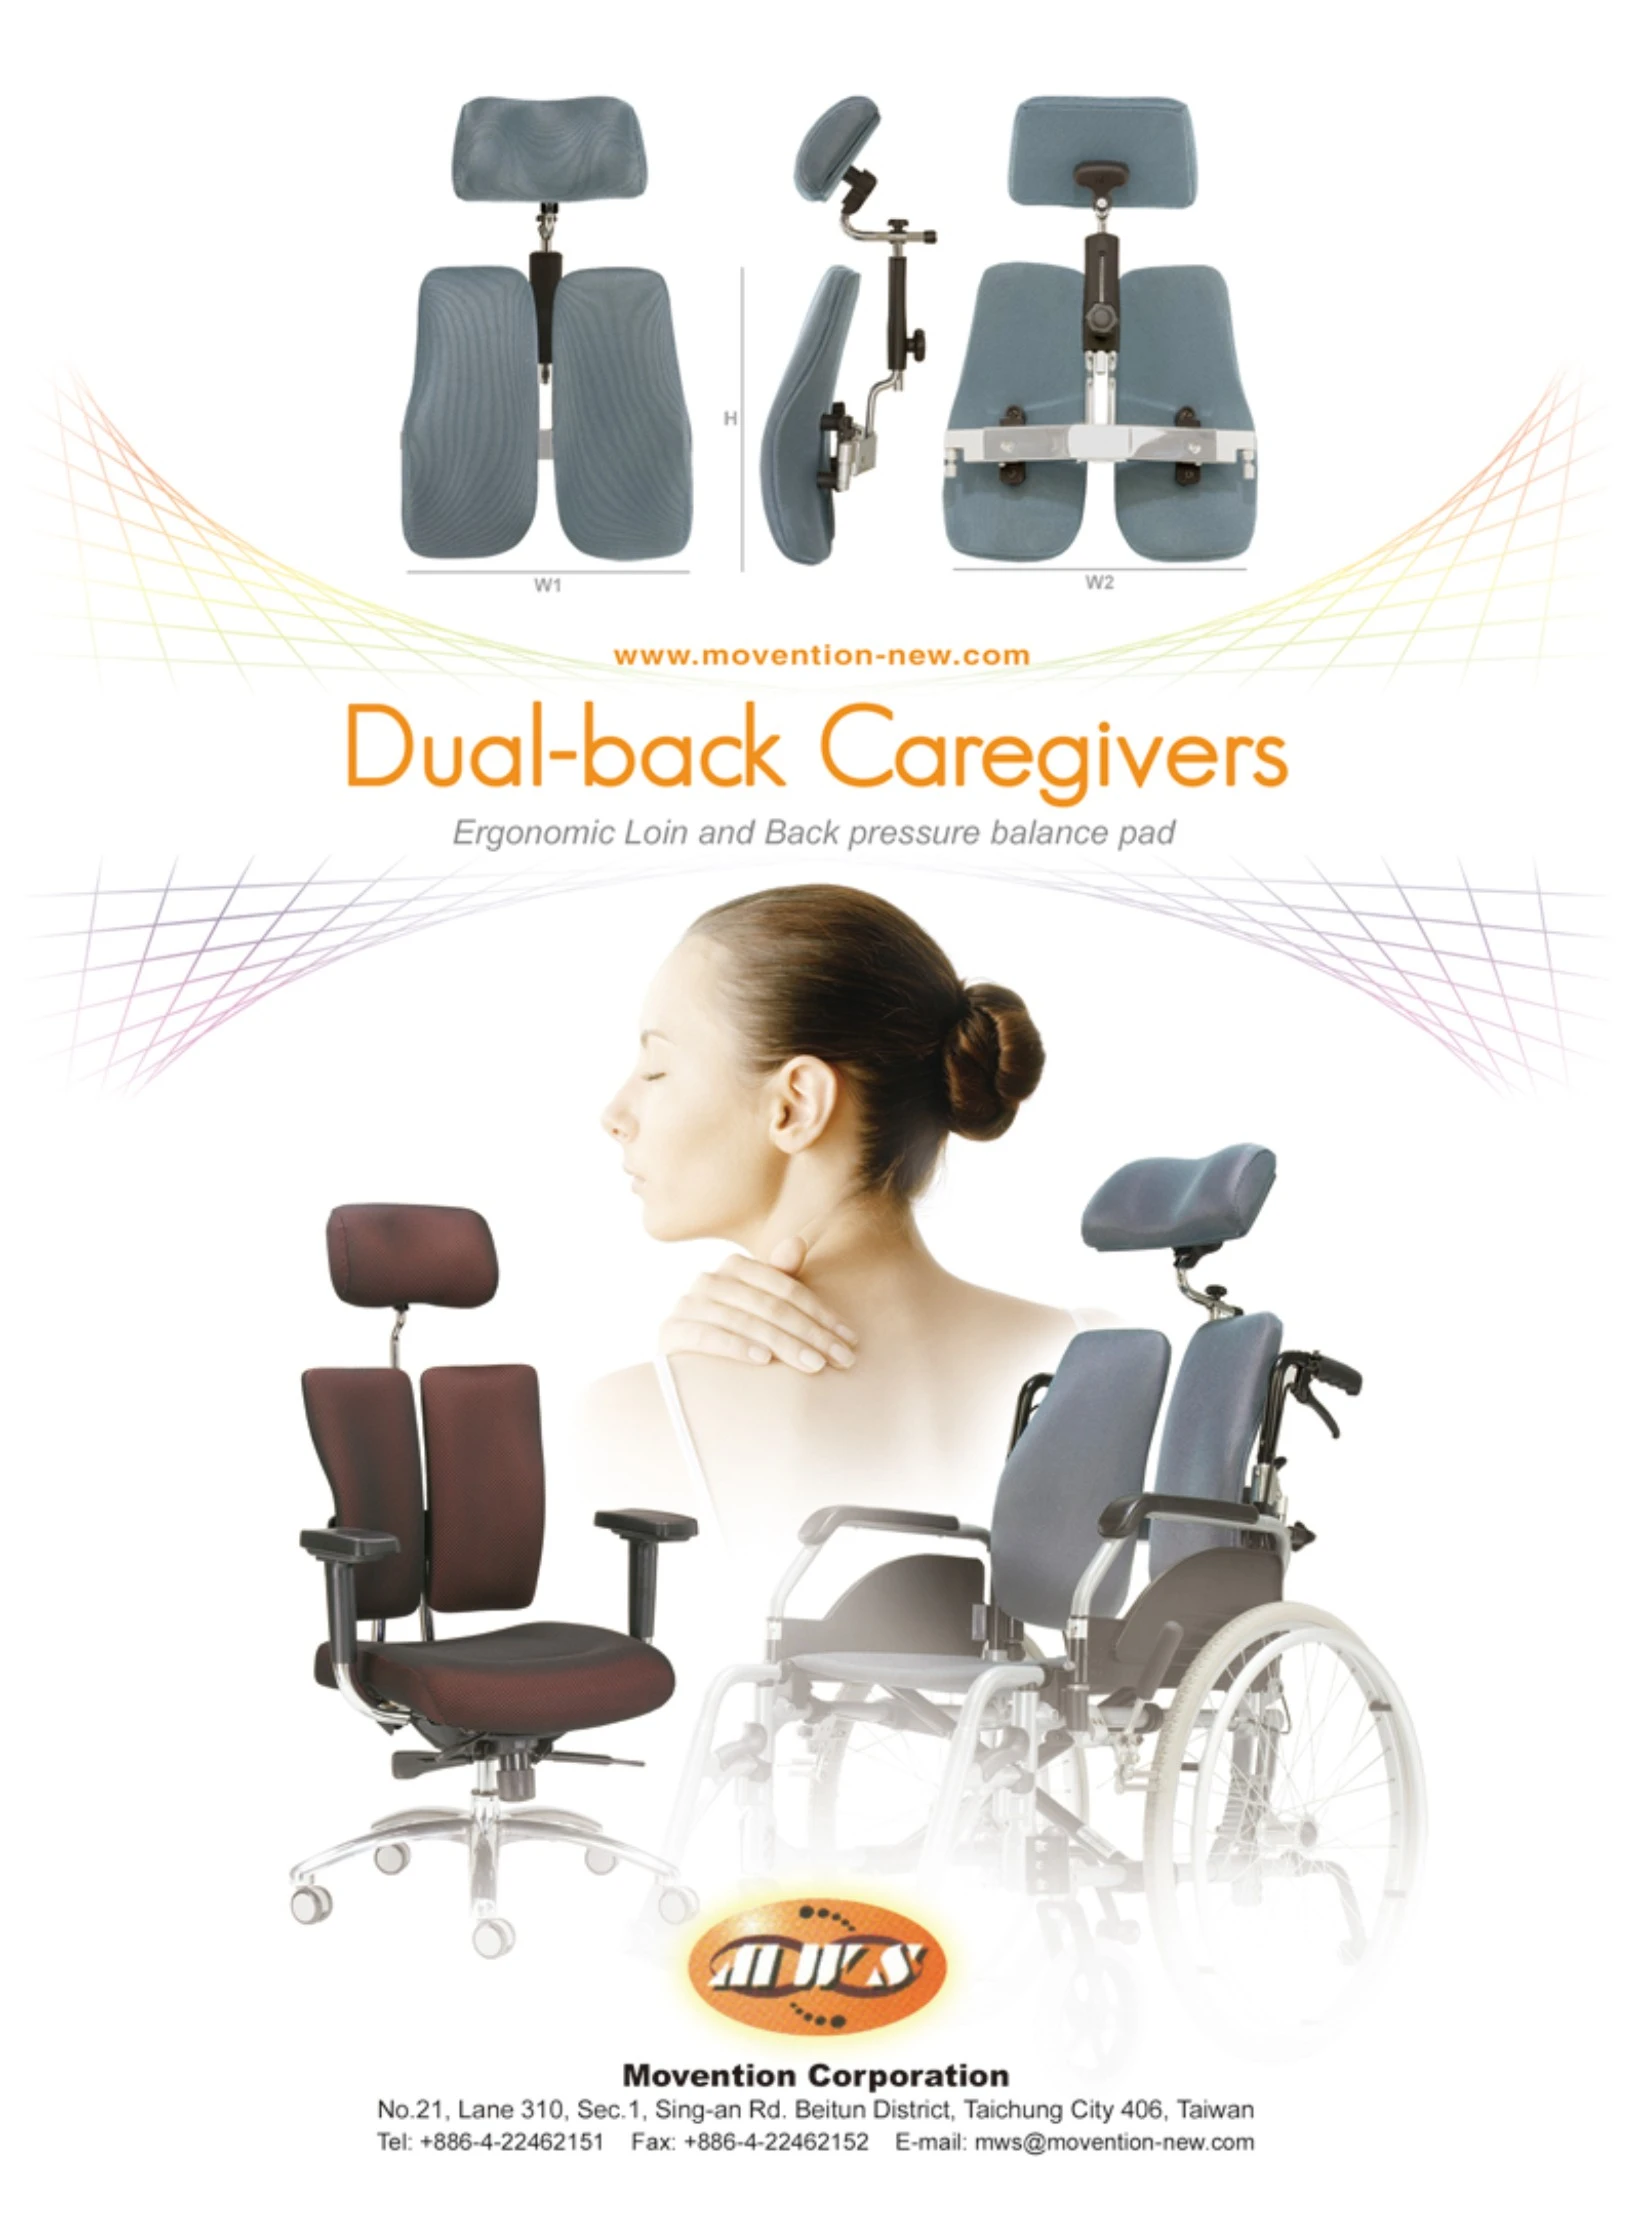 醫療器材雜誌FMH99年春季版-人體工學輪椅/輔具類